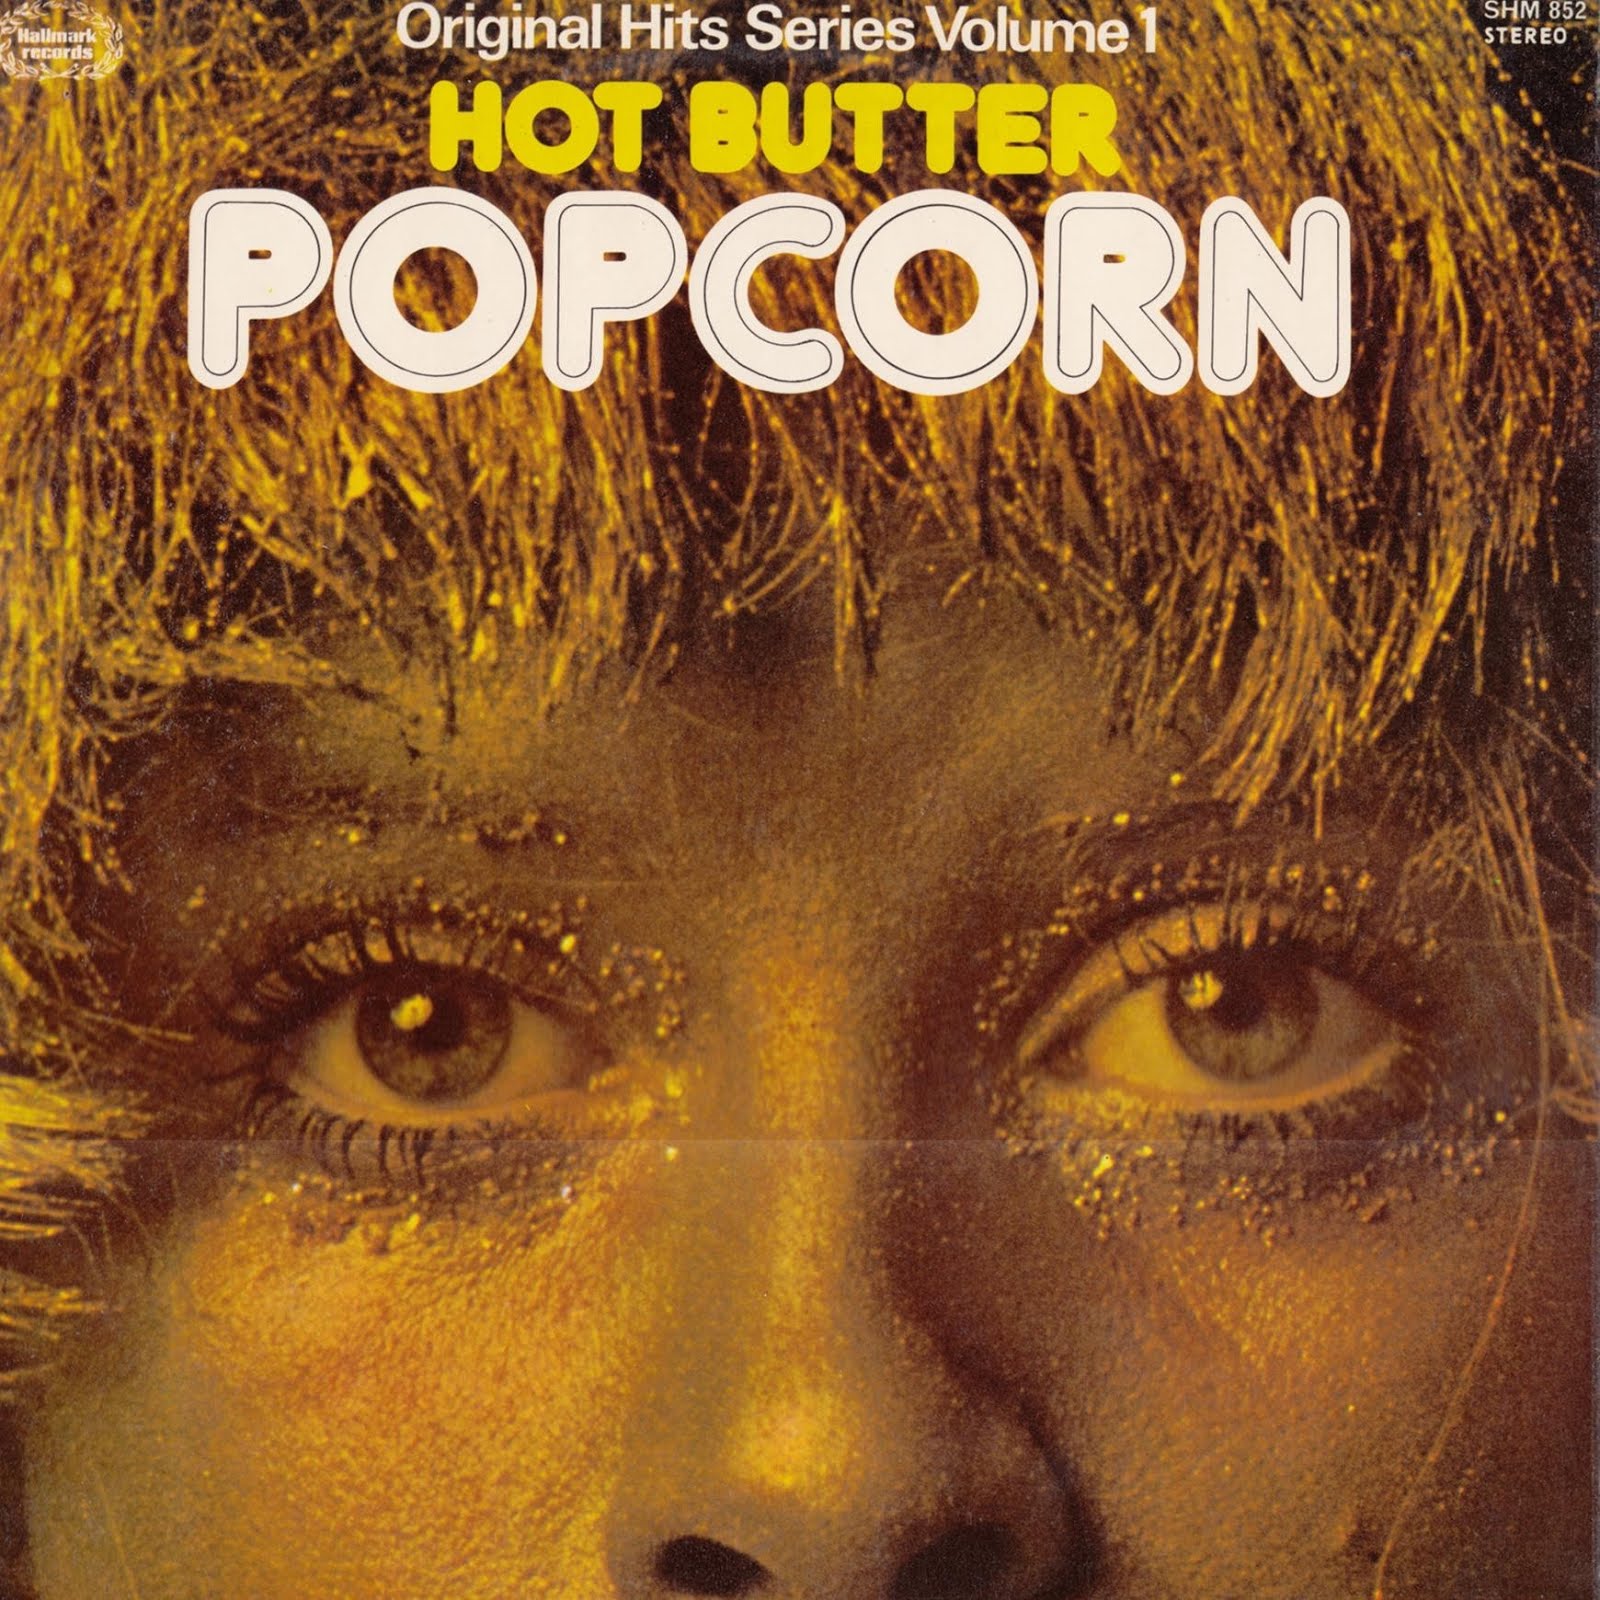 Альбомы 1972 года. Hot Butter Popcorn 1972. Hot Butter Band. Hot Butter_Popcorn [1972] album Cover. Butter обложка.